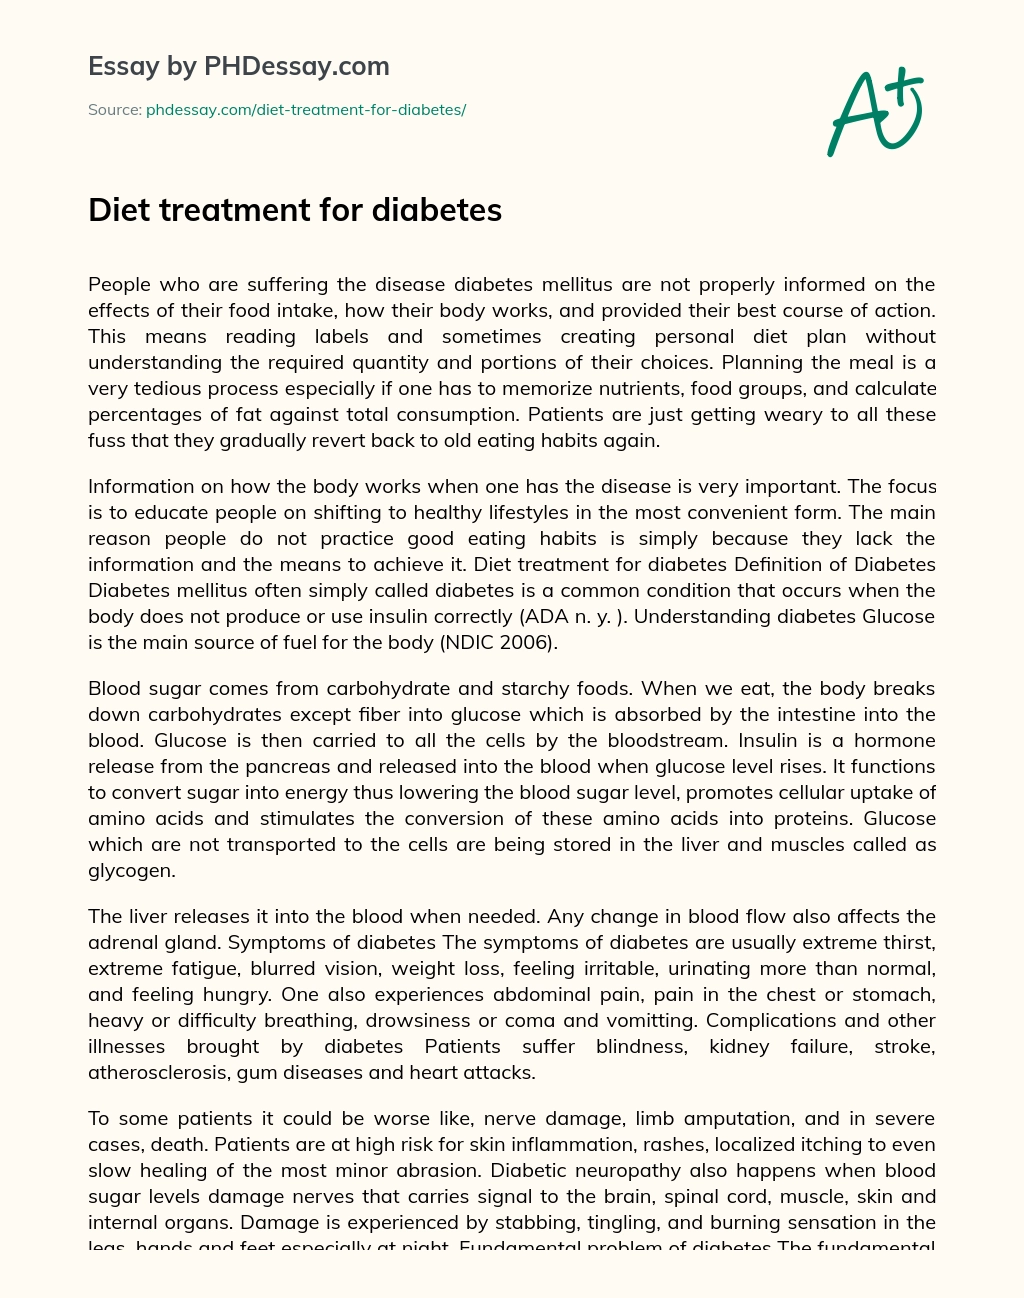 Diet treatment for diabetes essay